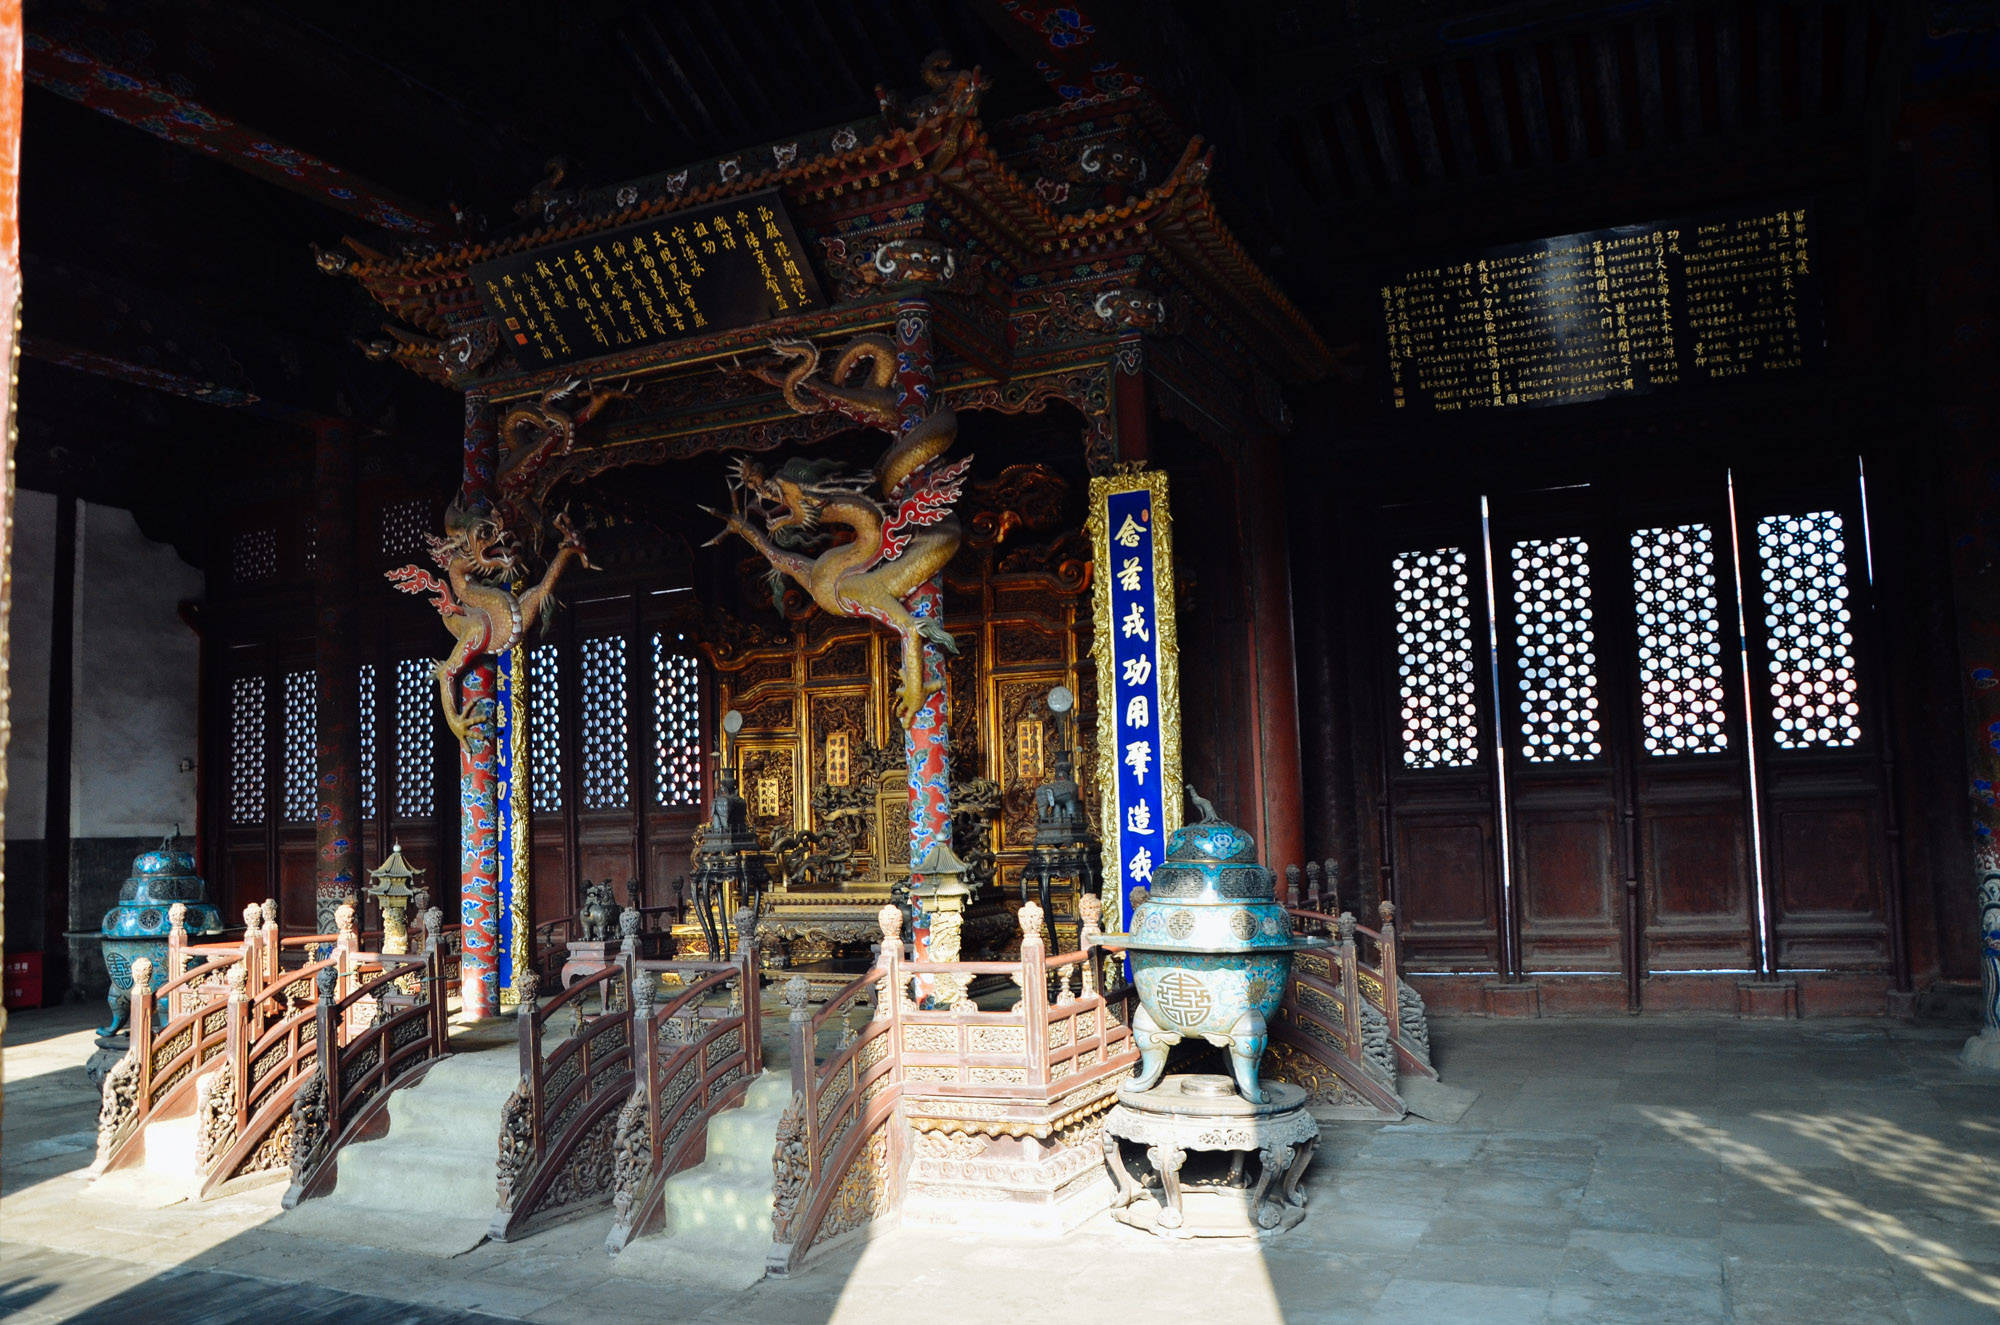 穿过"大清门"迎面就是沈阳故宫最重要的建筑--"崇政殿".